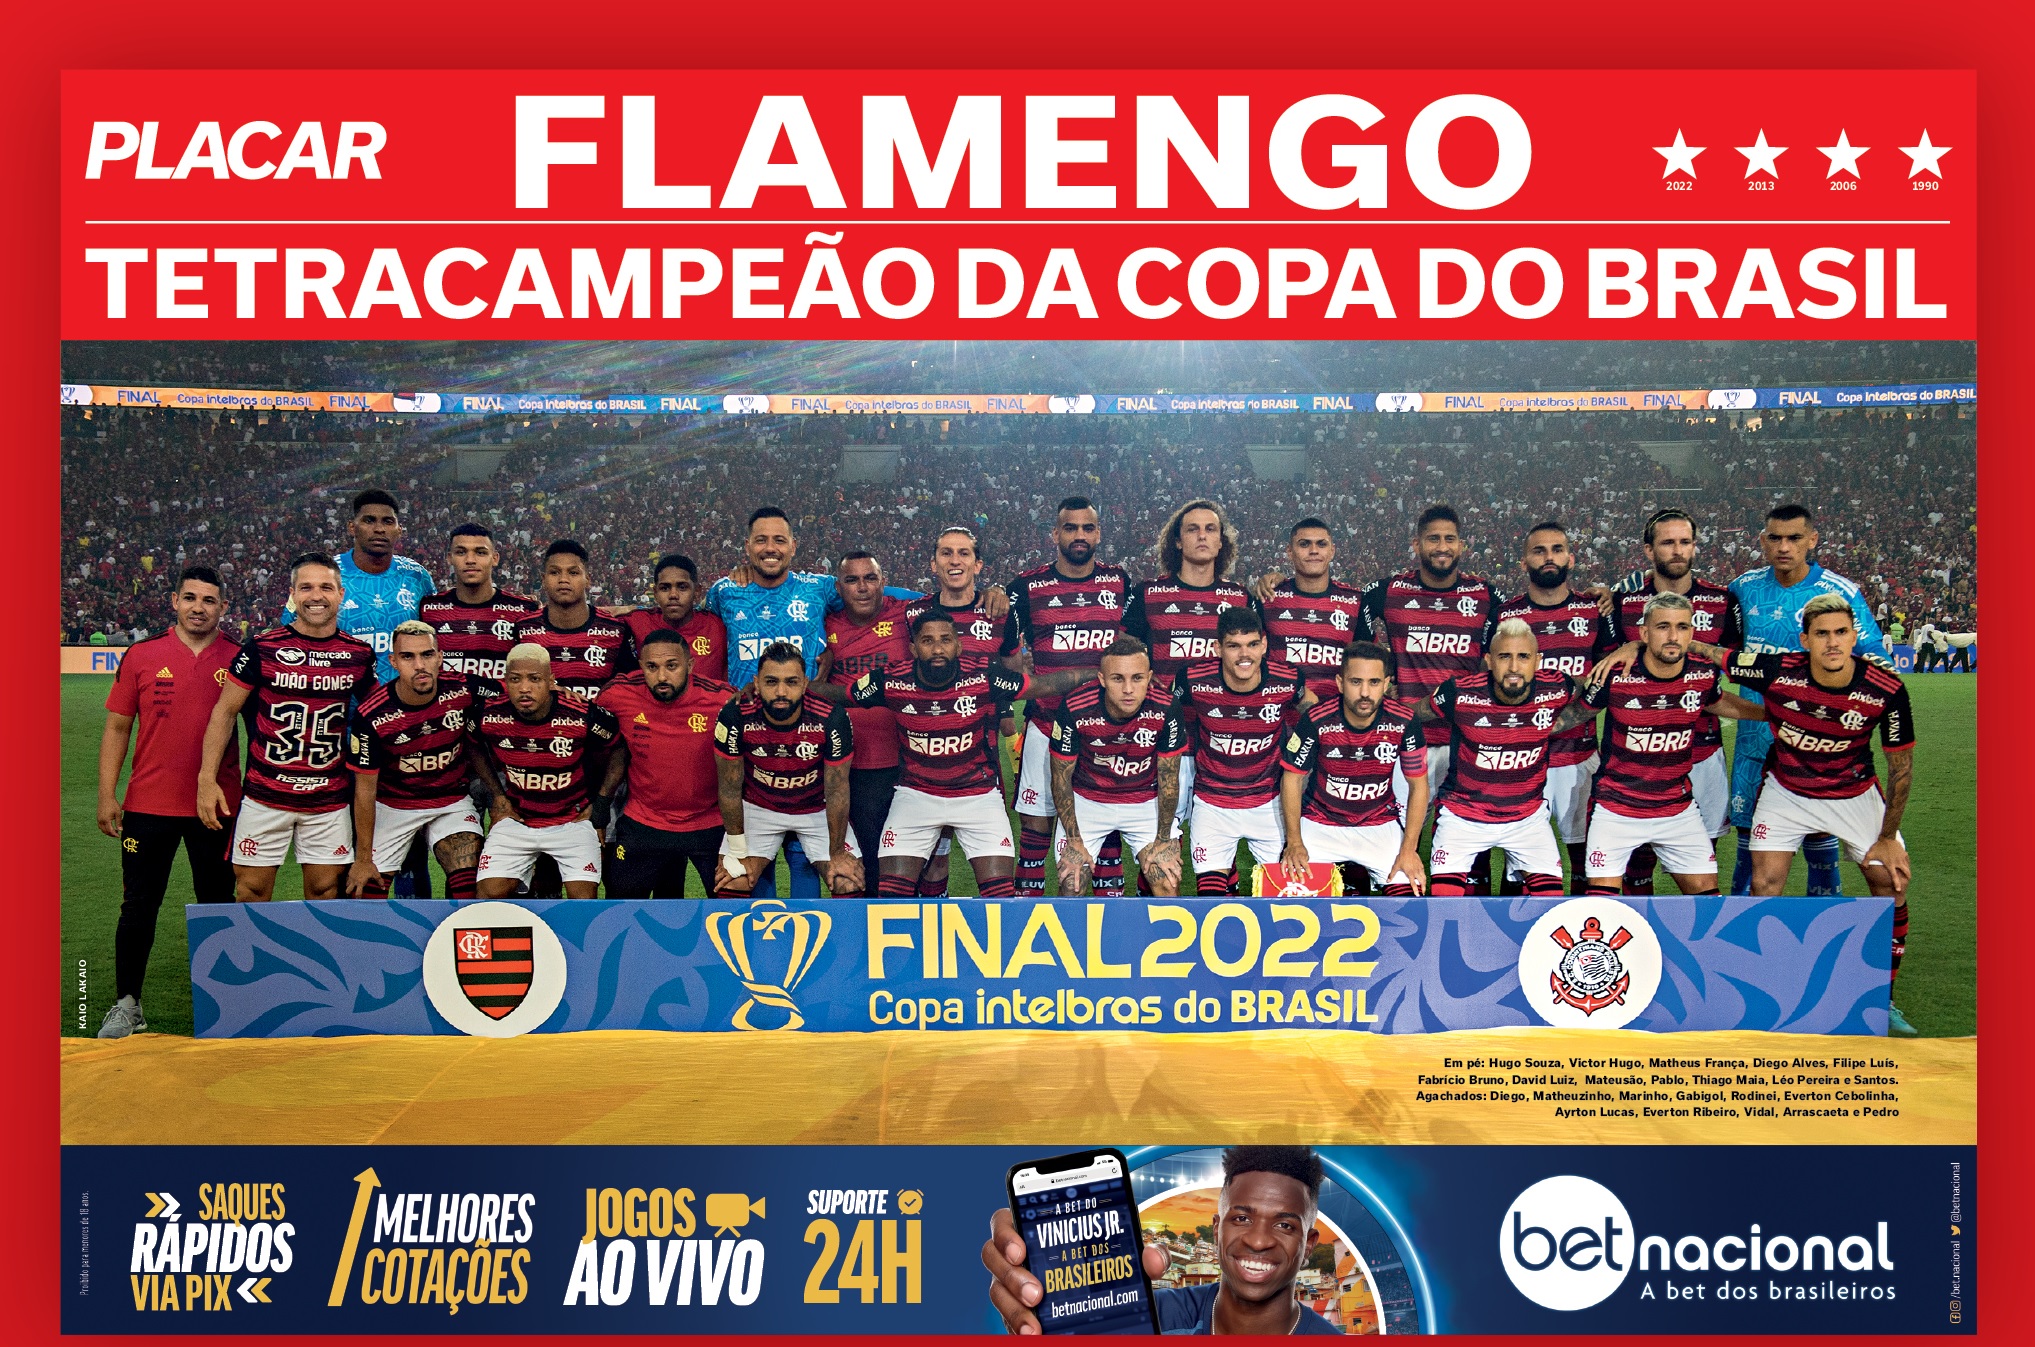 PLACAR lança o pôster do Flamengo, campeão da Copa do Brasil de 2022